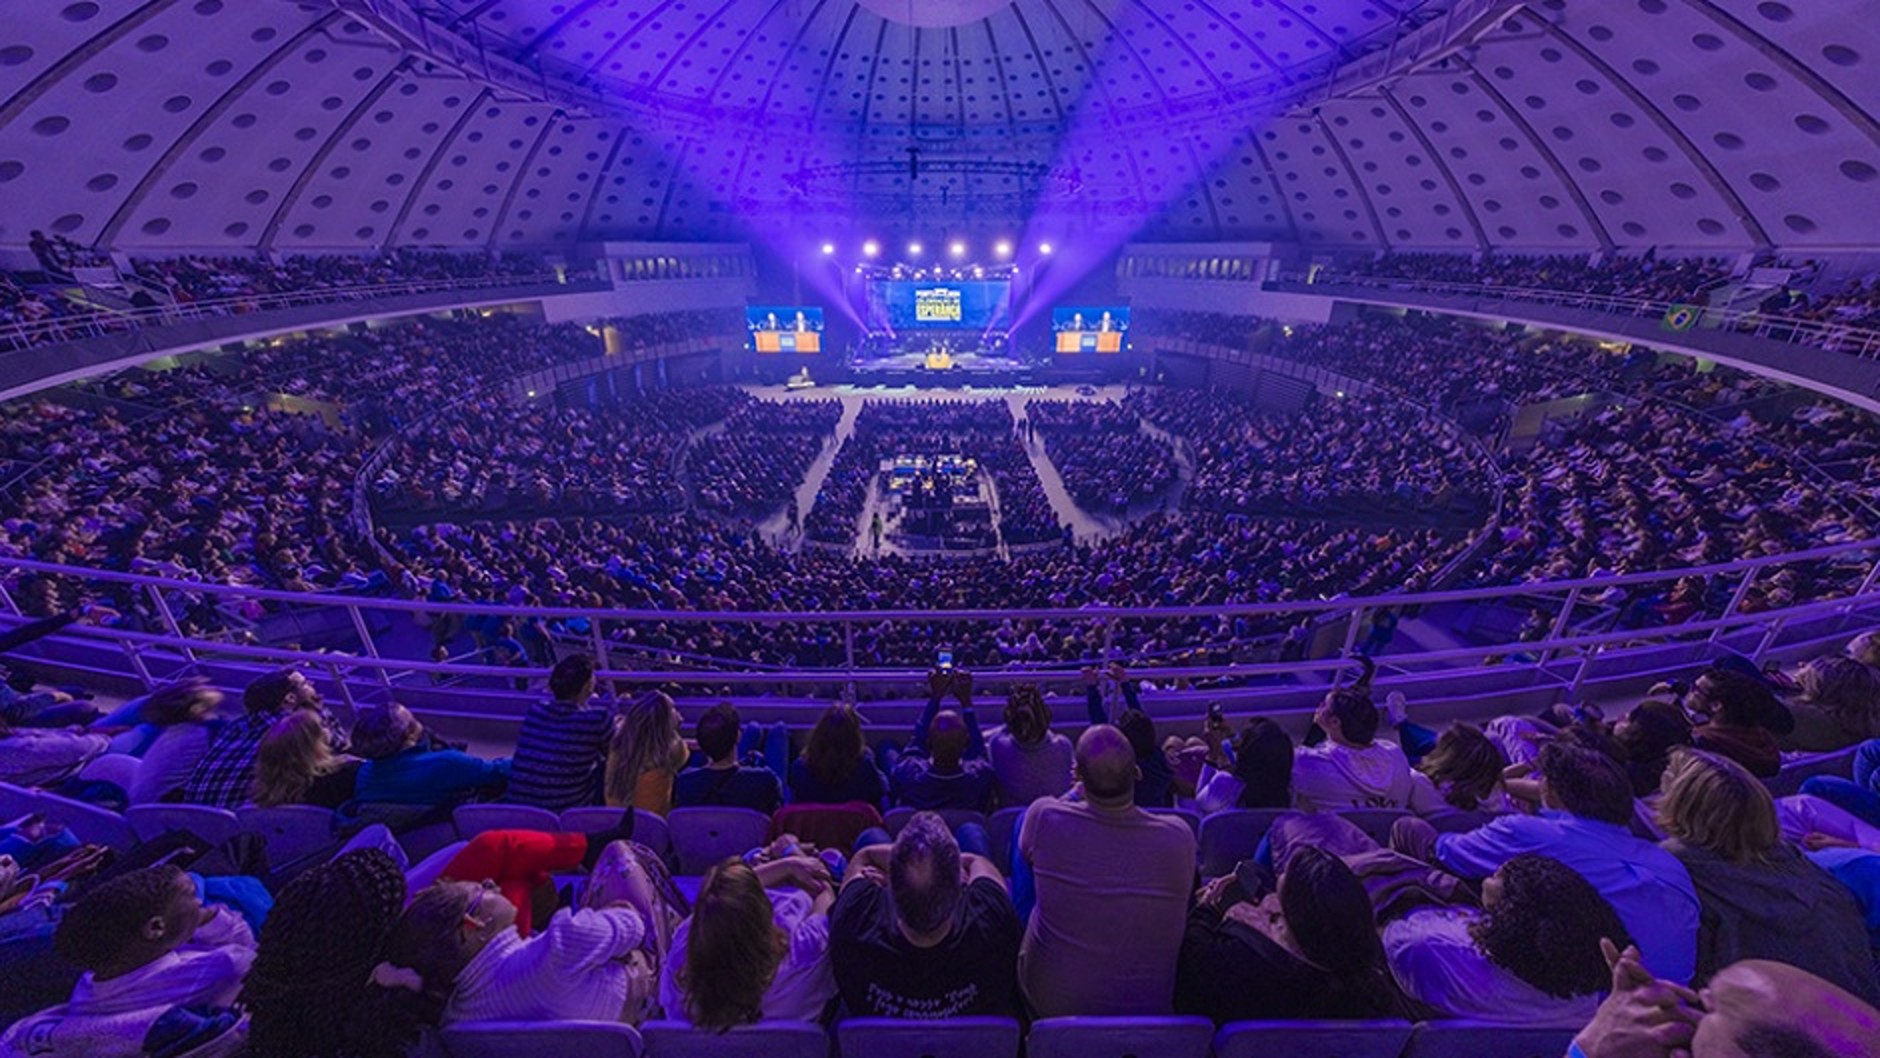 Više od 6000 okupilo se da slavi Boga: Oko 480 ljudi odazvalo se pozivu da Mu predaju svoj život